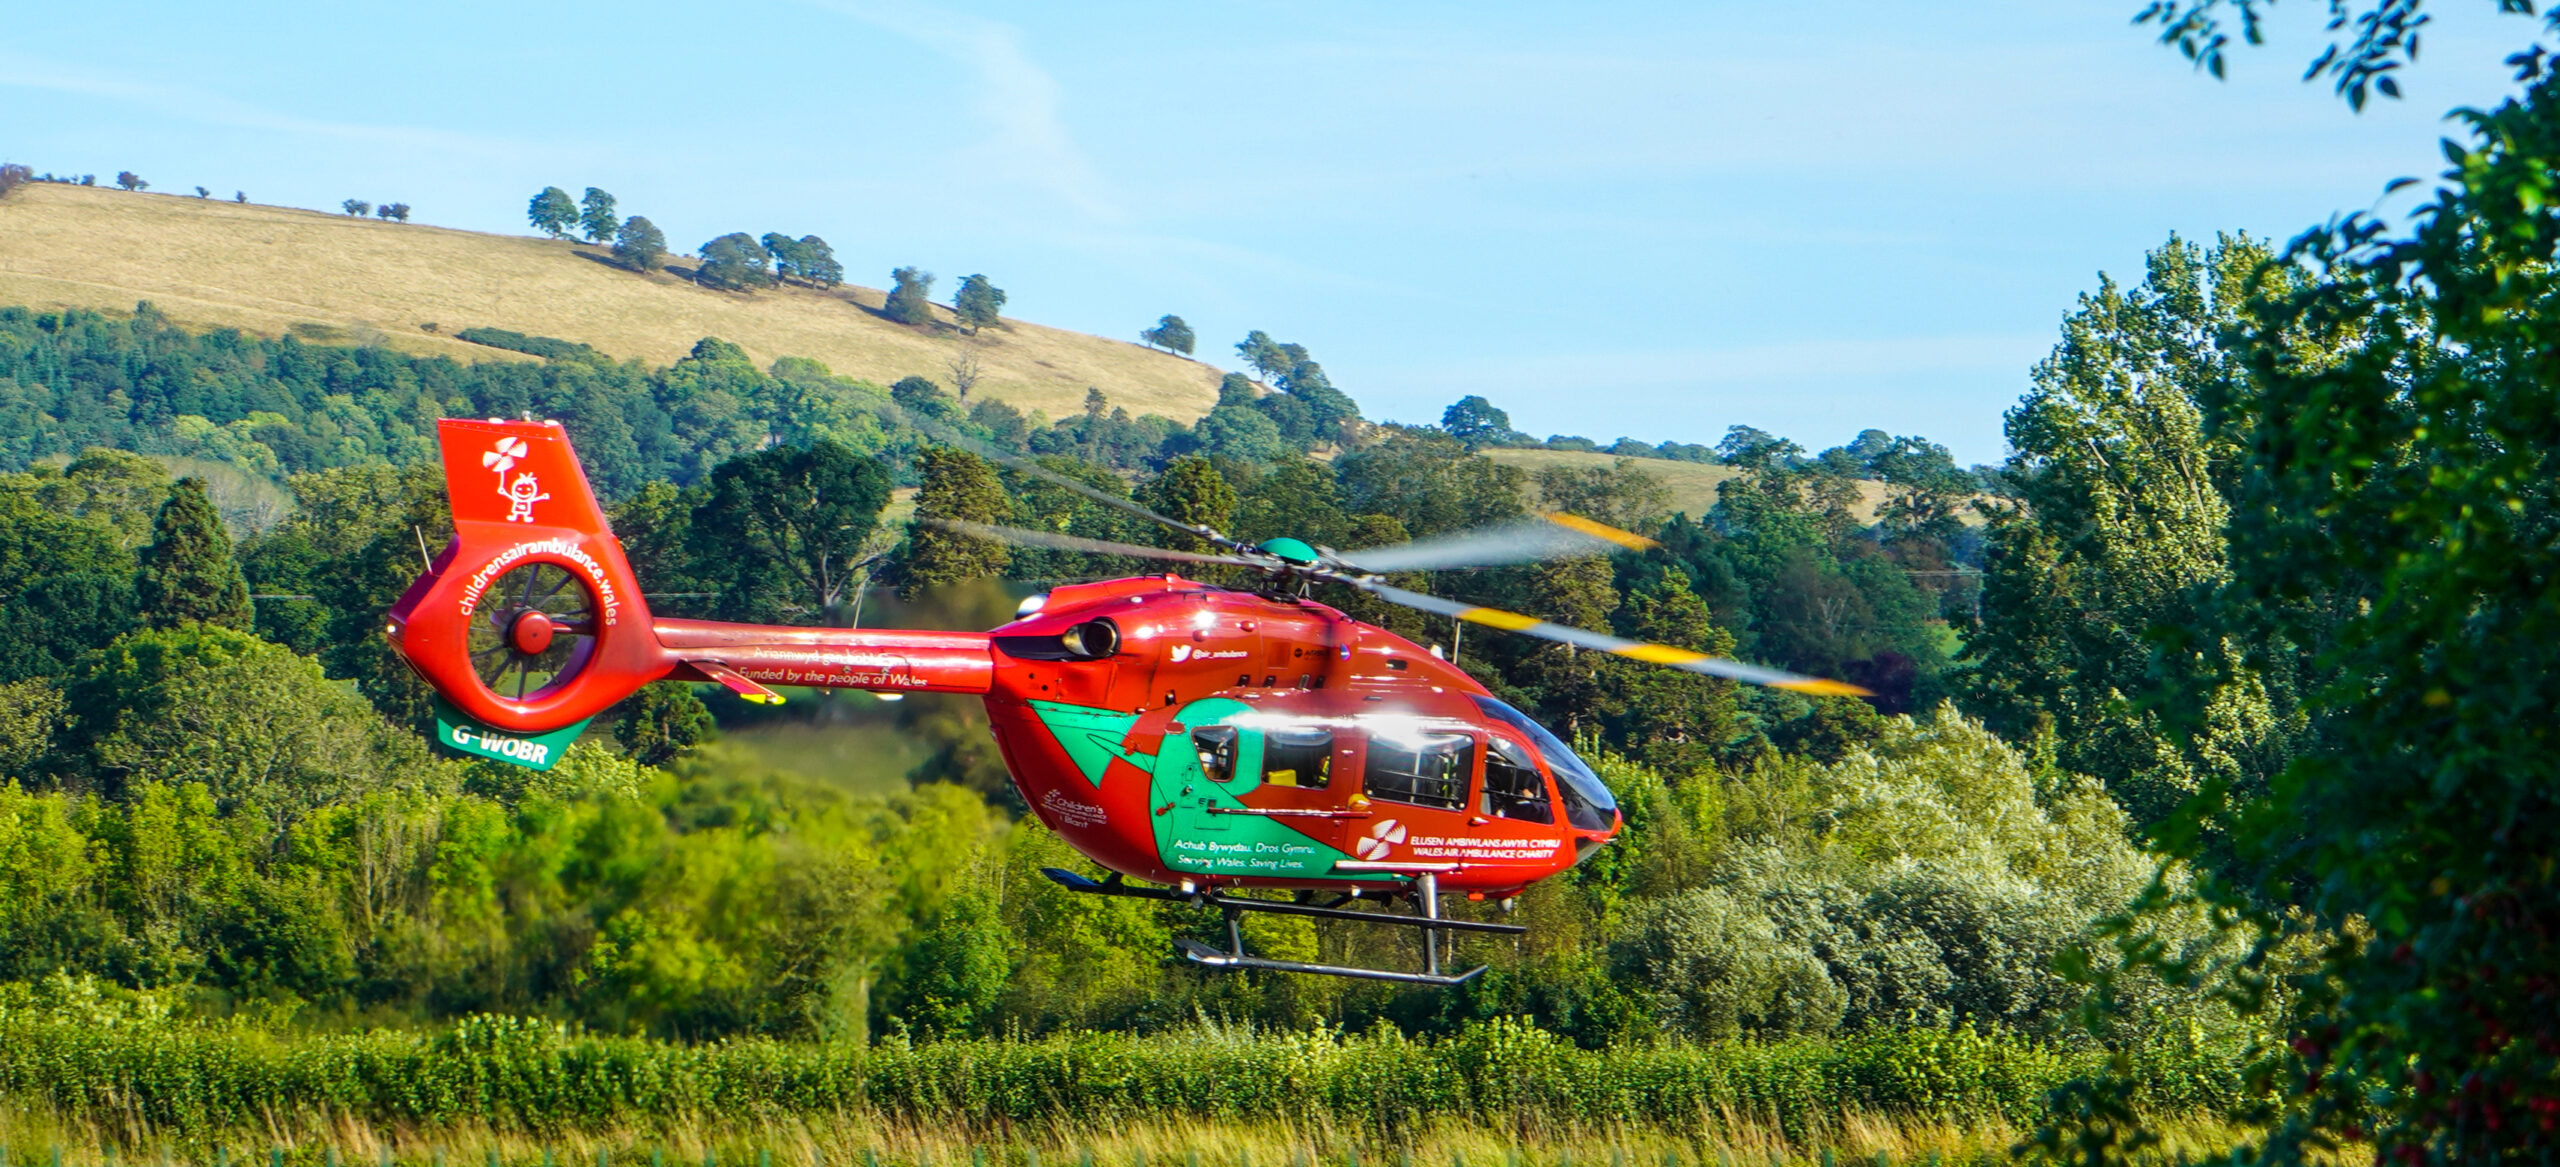 Wales Air Ambulance thanks volunteers during National Volunteers Week